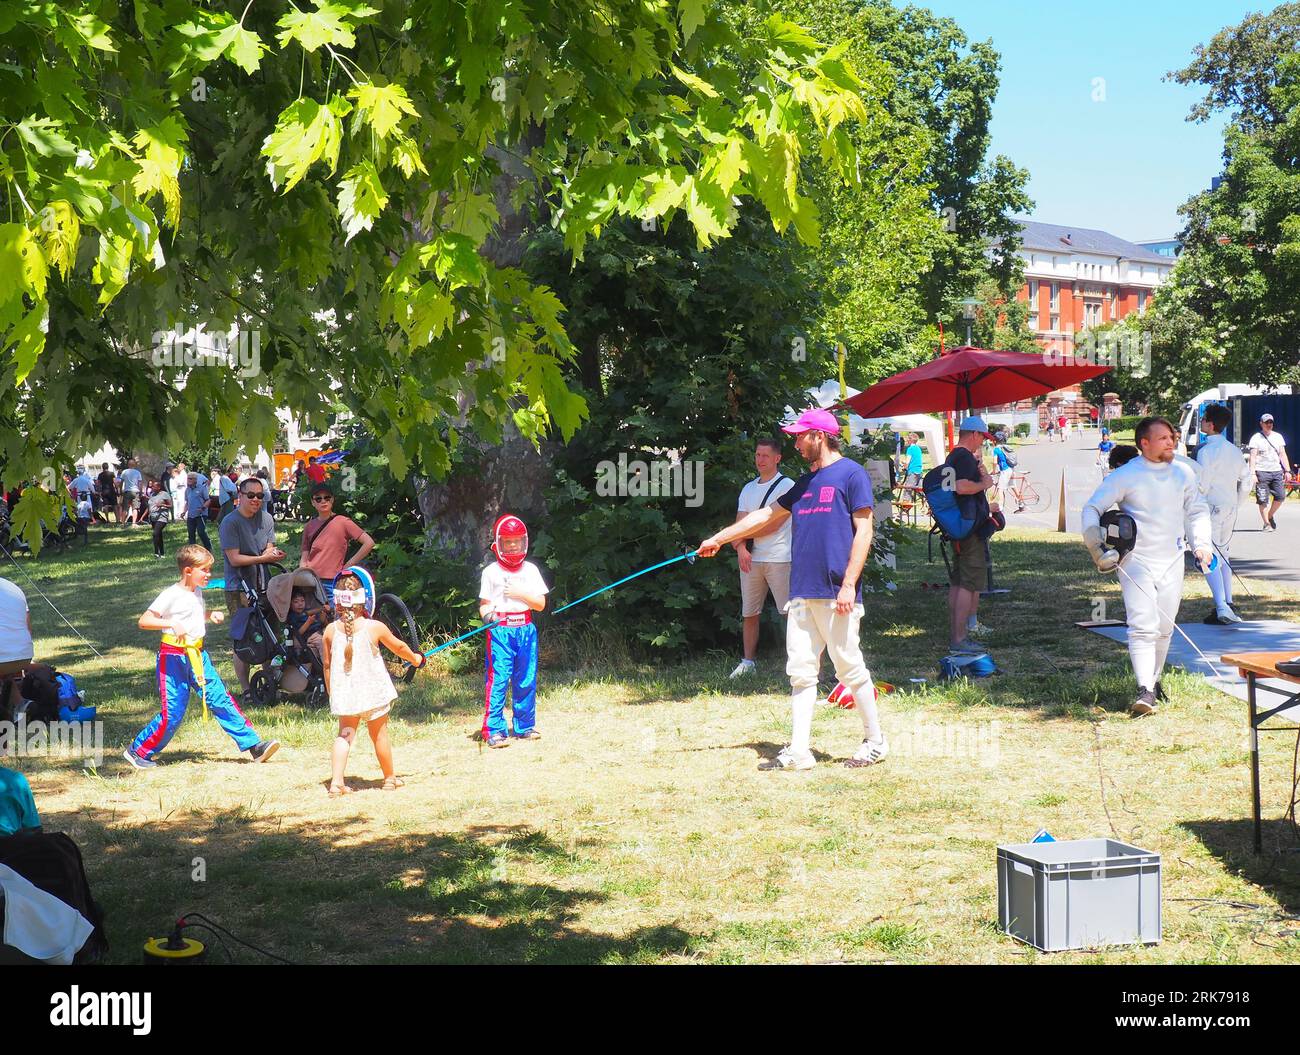 Eine vielfältige Gruppe von Menschen, die eine fröhliche Zeit in einem üppigen grünen Park in Darmstadt verbringen Stockfoto